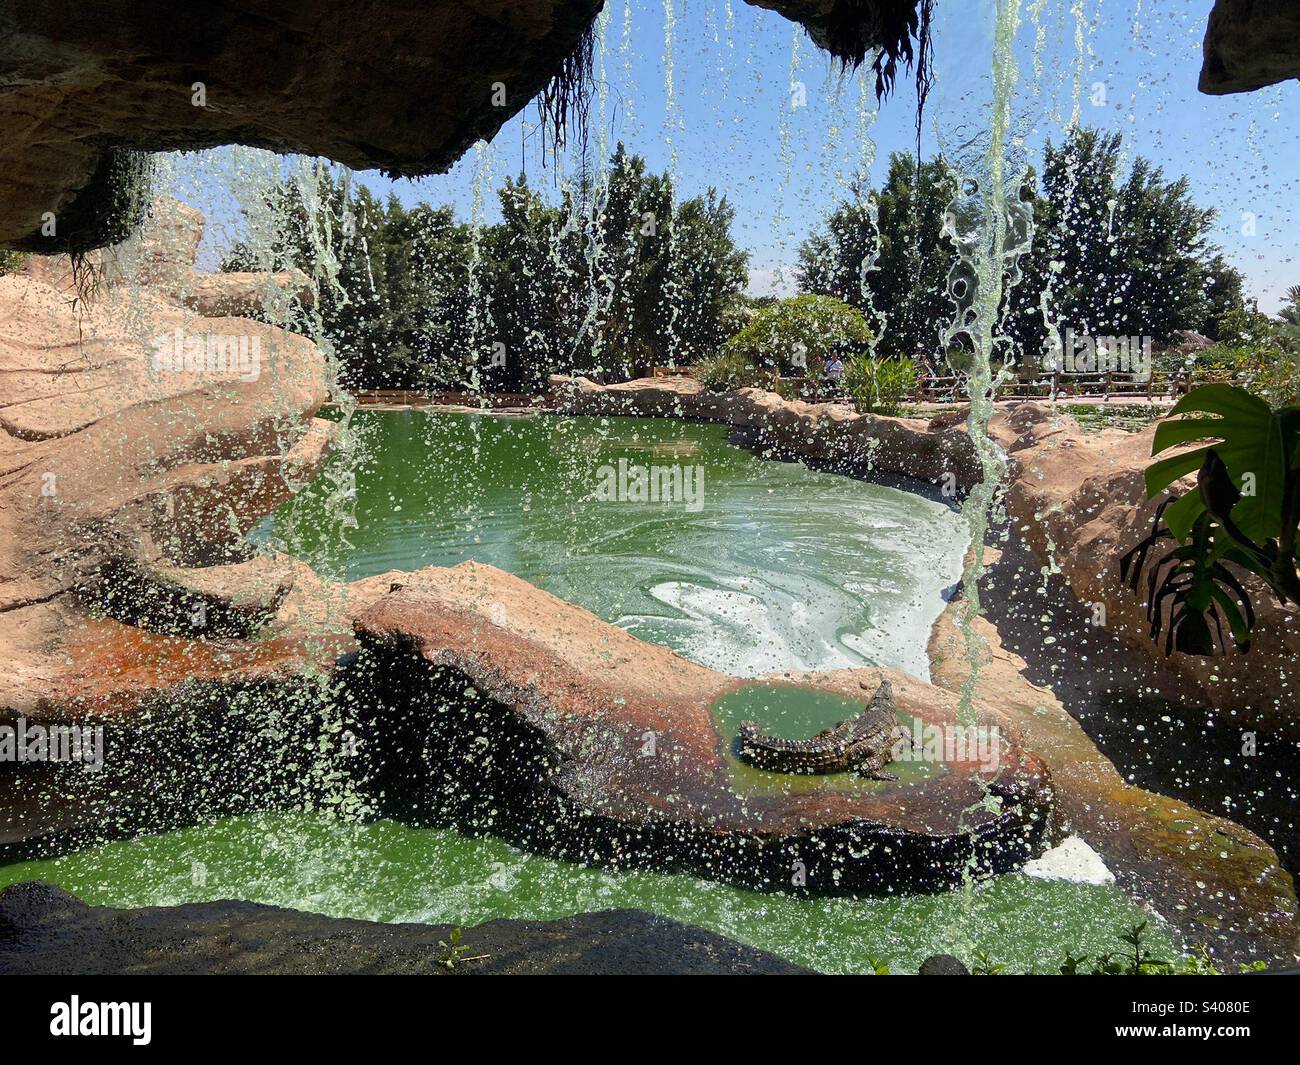 Scivolo d’eau dans un parc à rettili Foto Stock